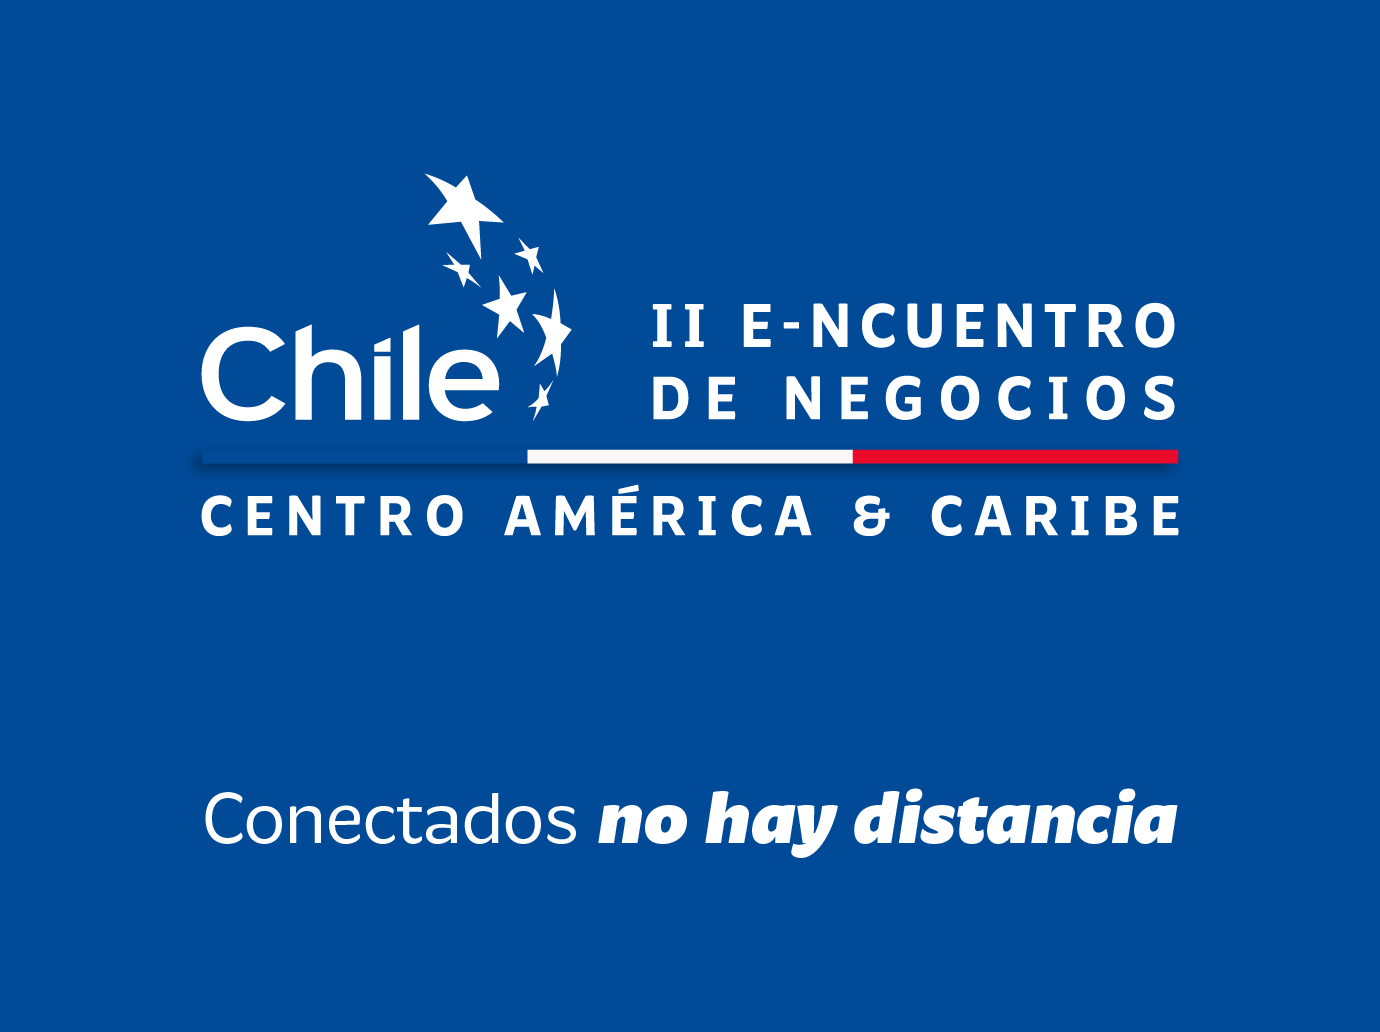 ProChile anuncia la realización del Segundo Encuentro de Negocios Centroamérica & Caribe